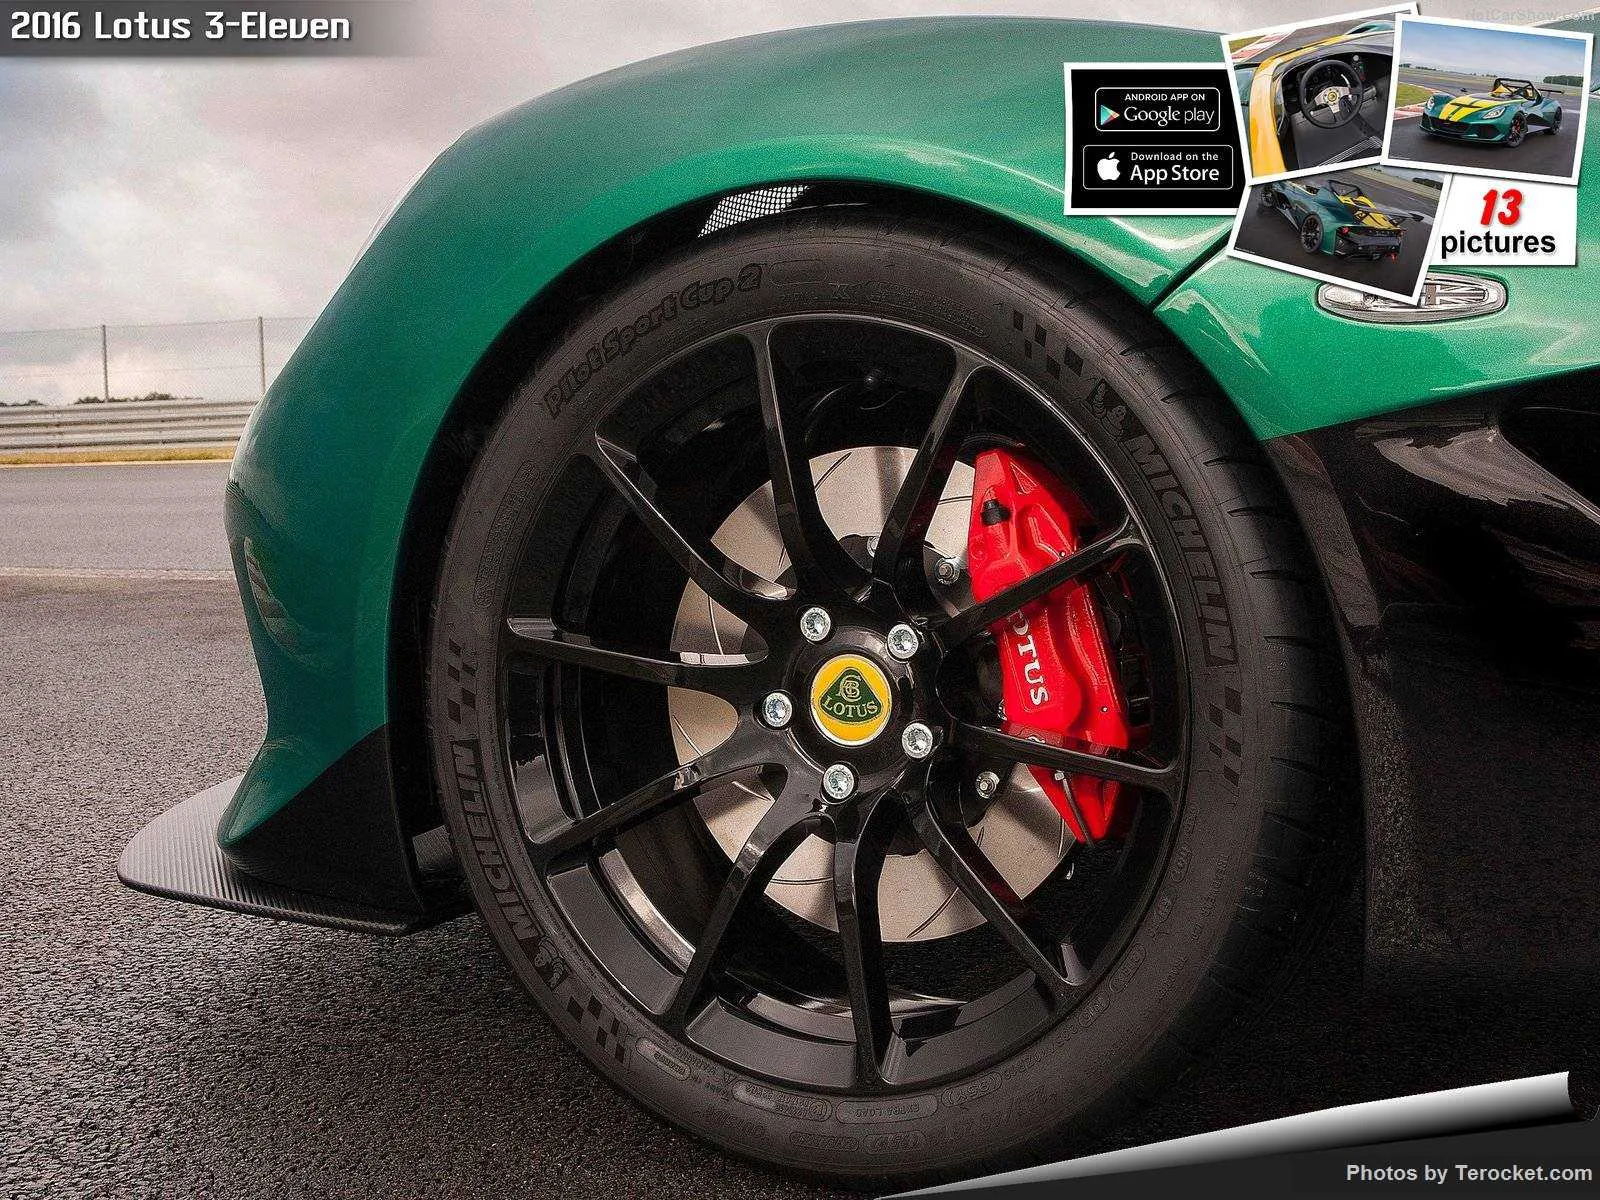 Hình ảnh siêu xe Lotus 3-Eleven 2016 & nội ngoại thất